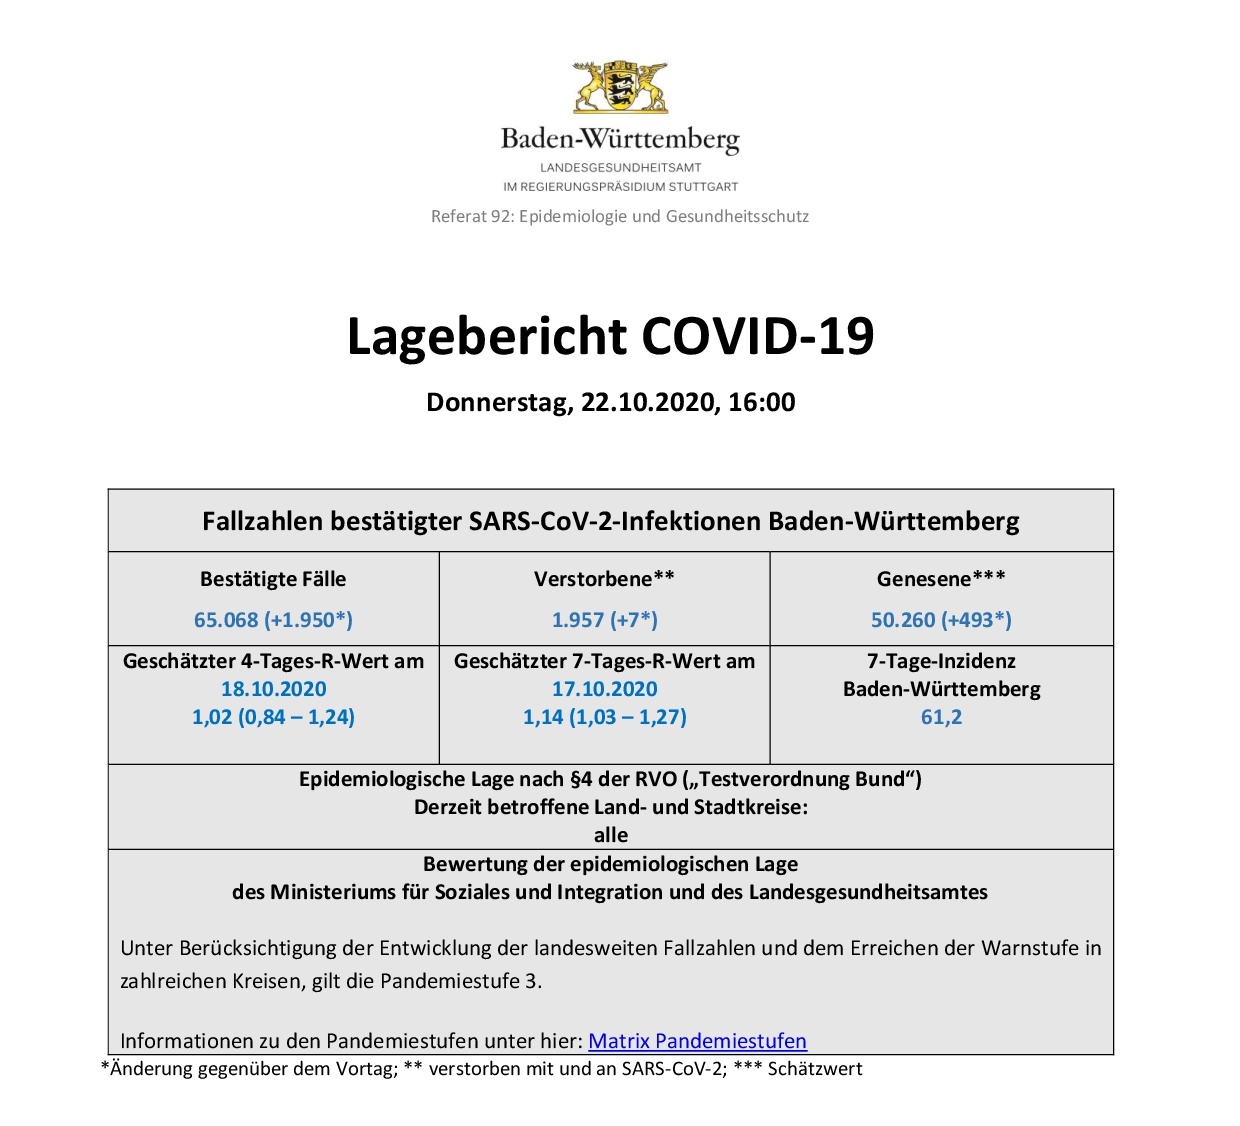 Ausführlicher COVID-19 Tagesbericht (22.10.2020) des Landesgesundheitsamts Baden-Württemberg